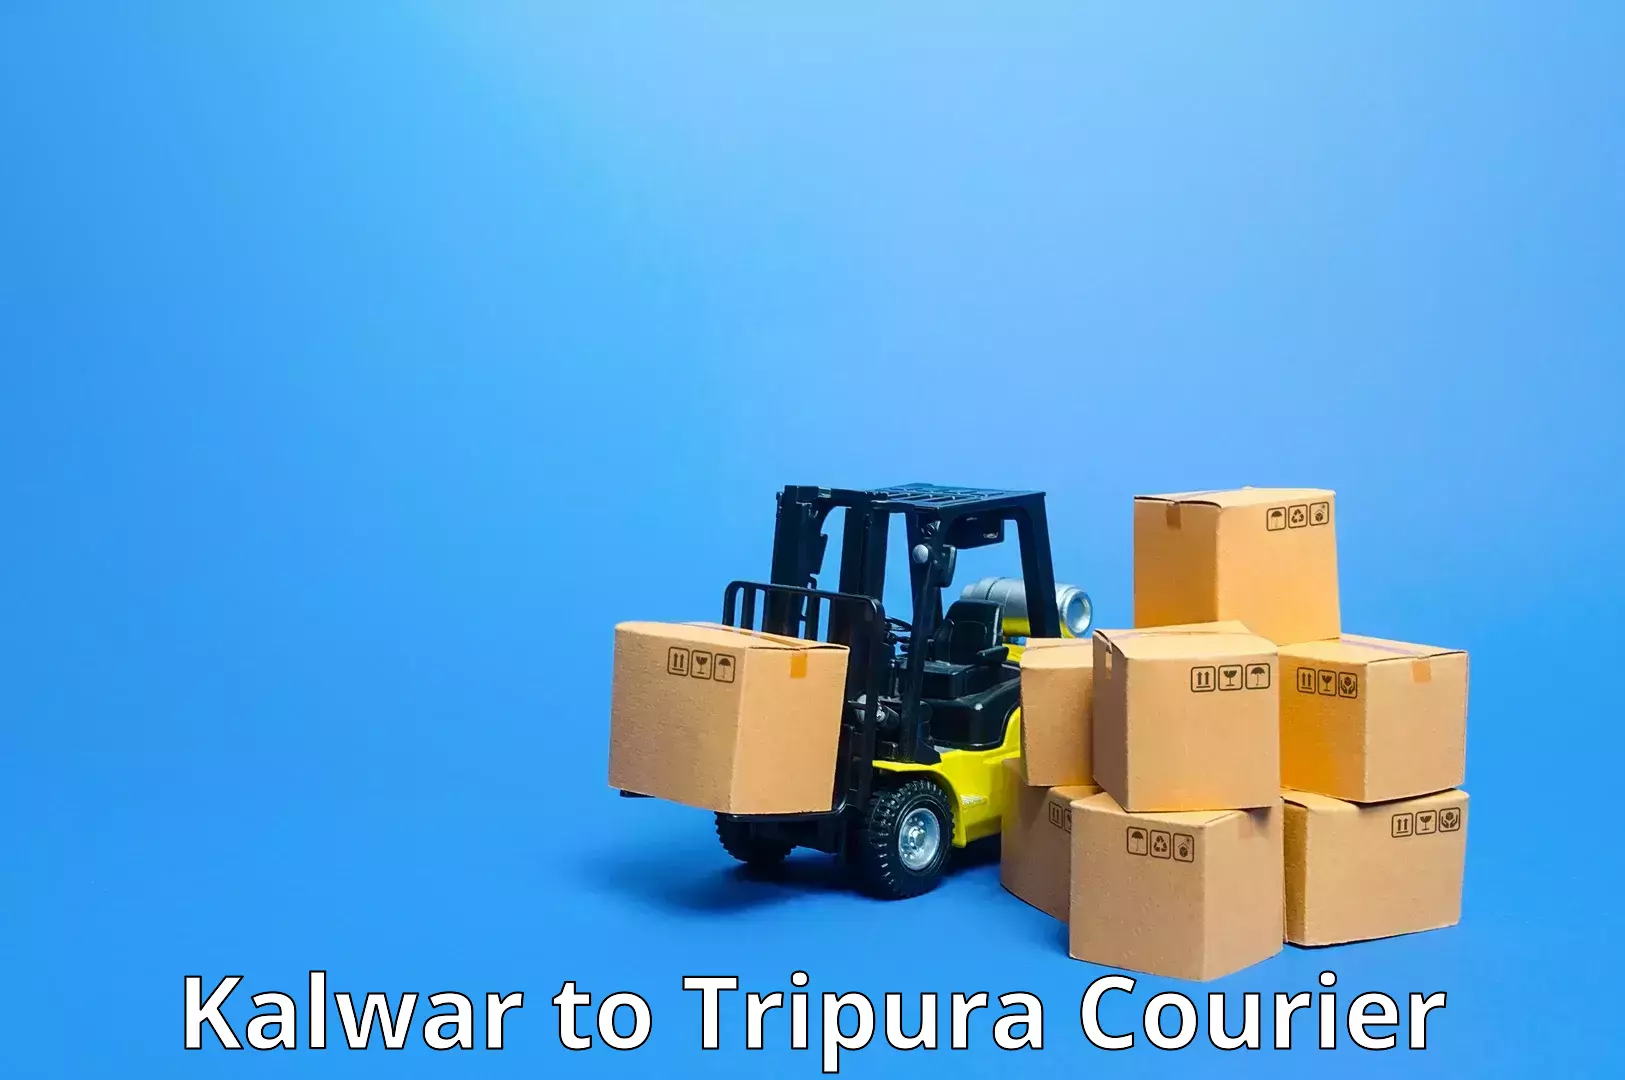 Global freight services Kalwar to Manu Bazar